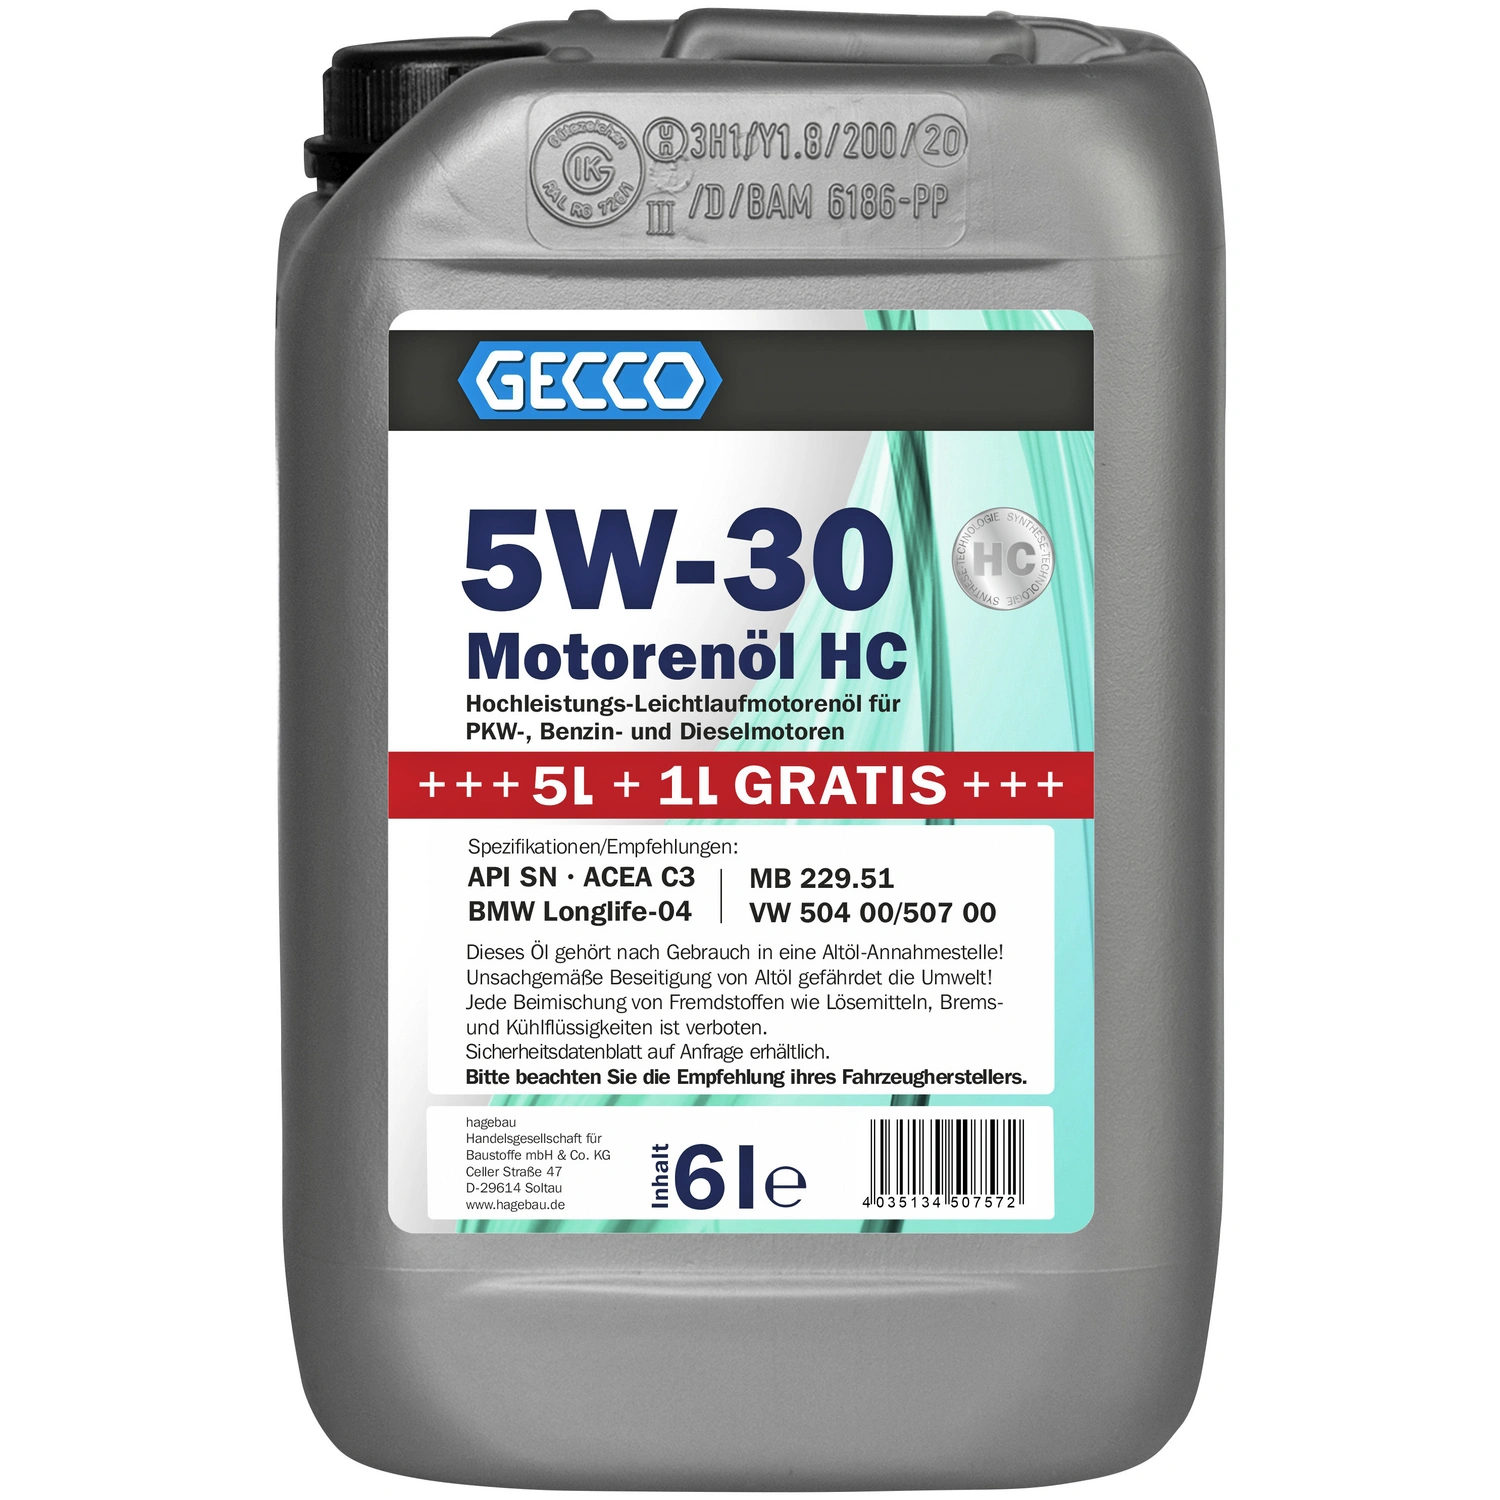 GECCO Motoröl »5W-30«, 6 l, Kanister, für PKW-, Benzin- und Dieselmotoren 